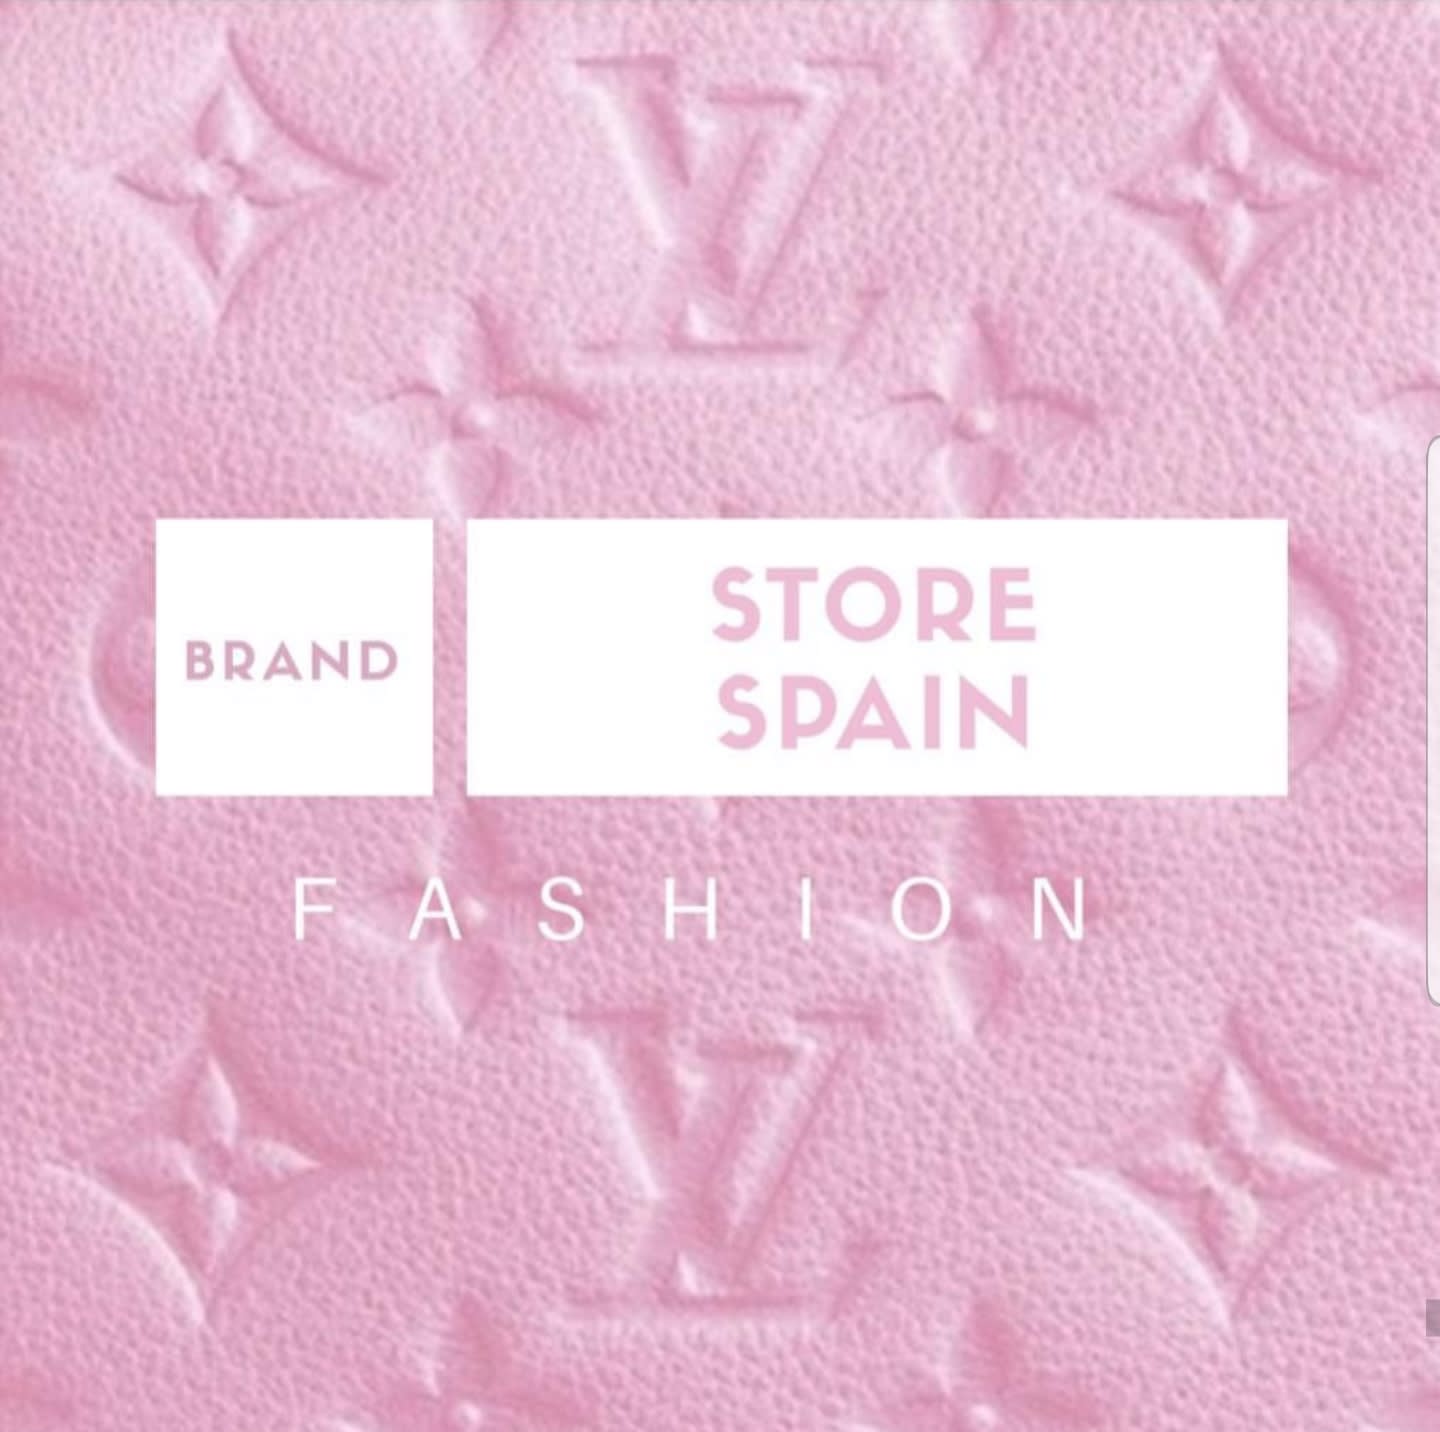 Brand Store Spain